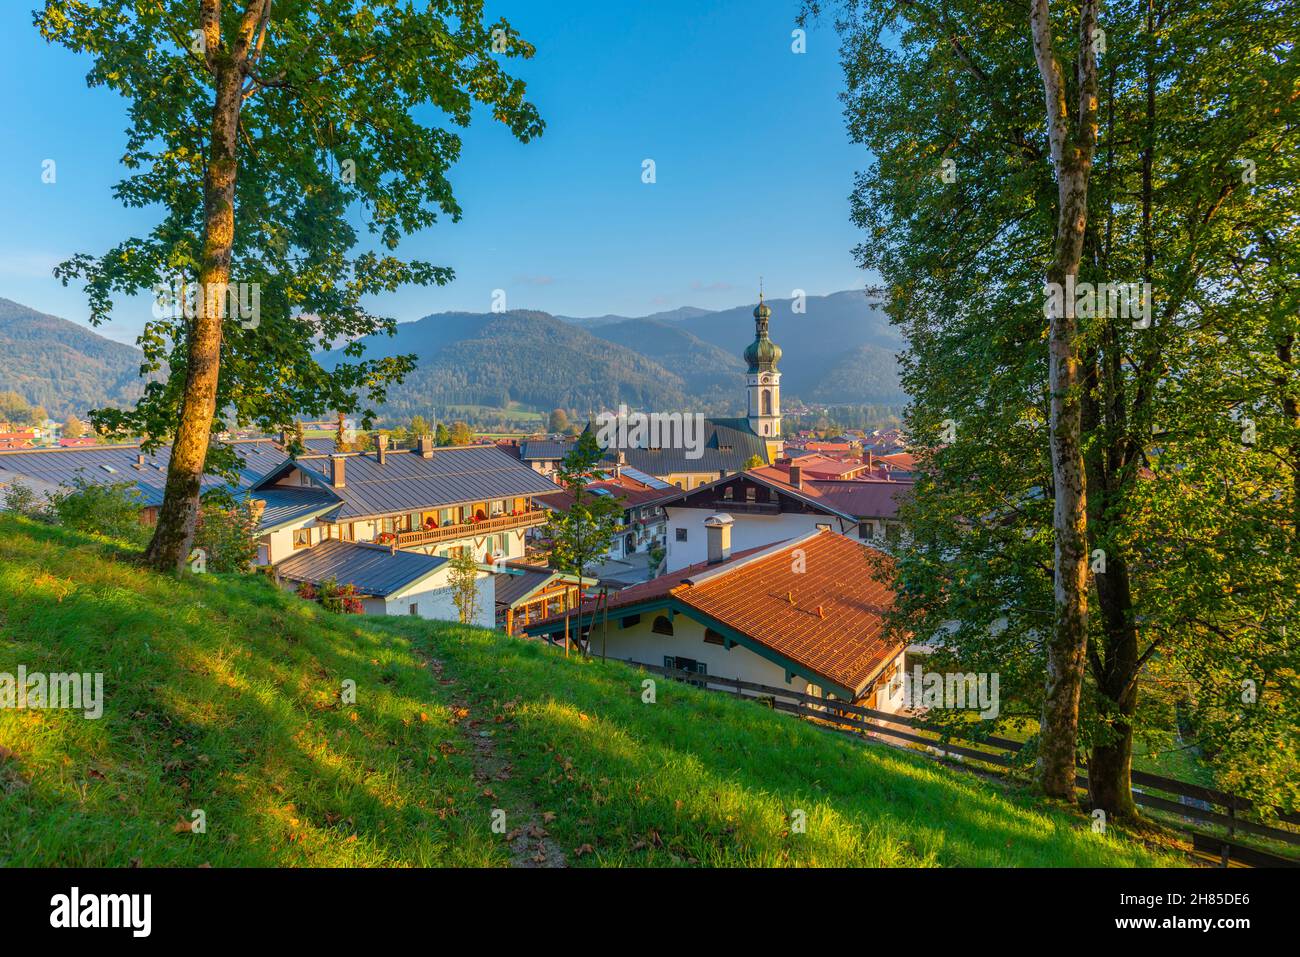 Vista sul popolare e turistico villaggio termale climatico Reit im Winkl, regione di Chiemgau, alta Baviera, Germania meridionale, Europa Foto Stock